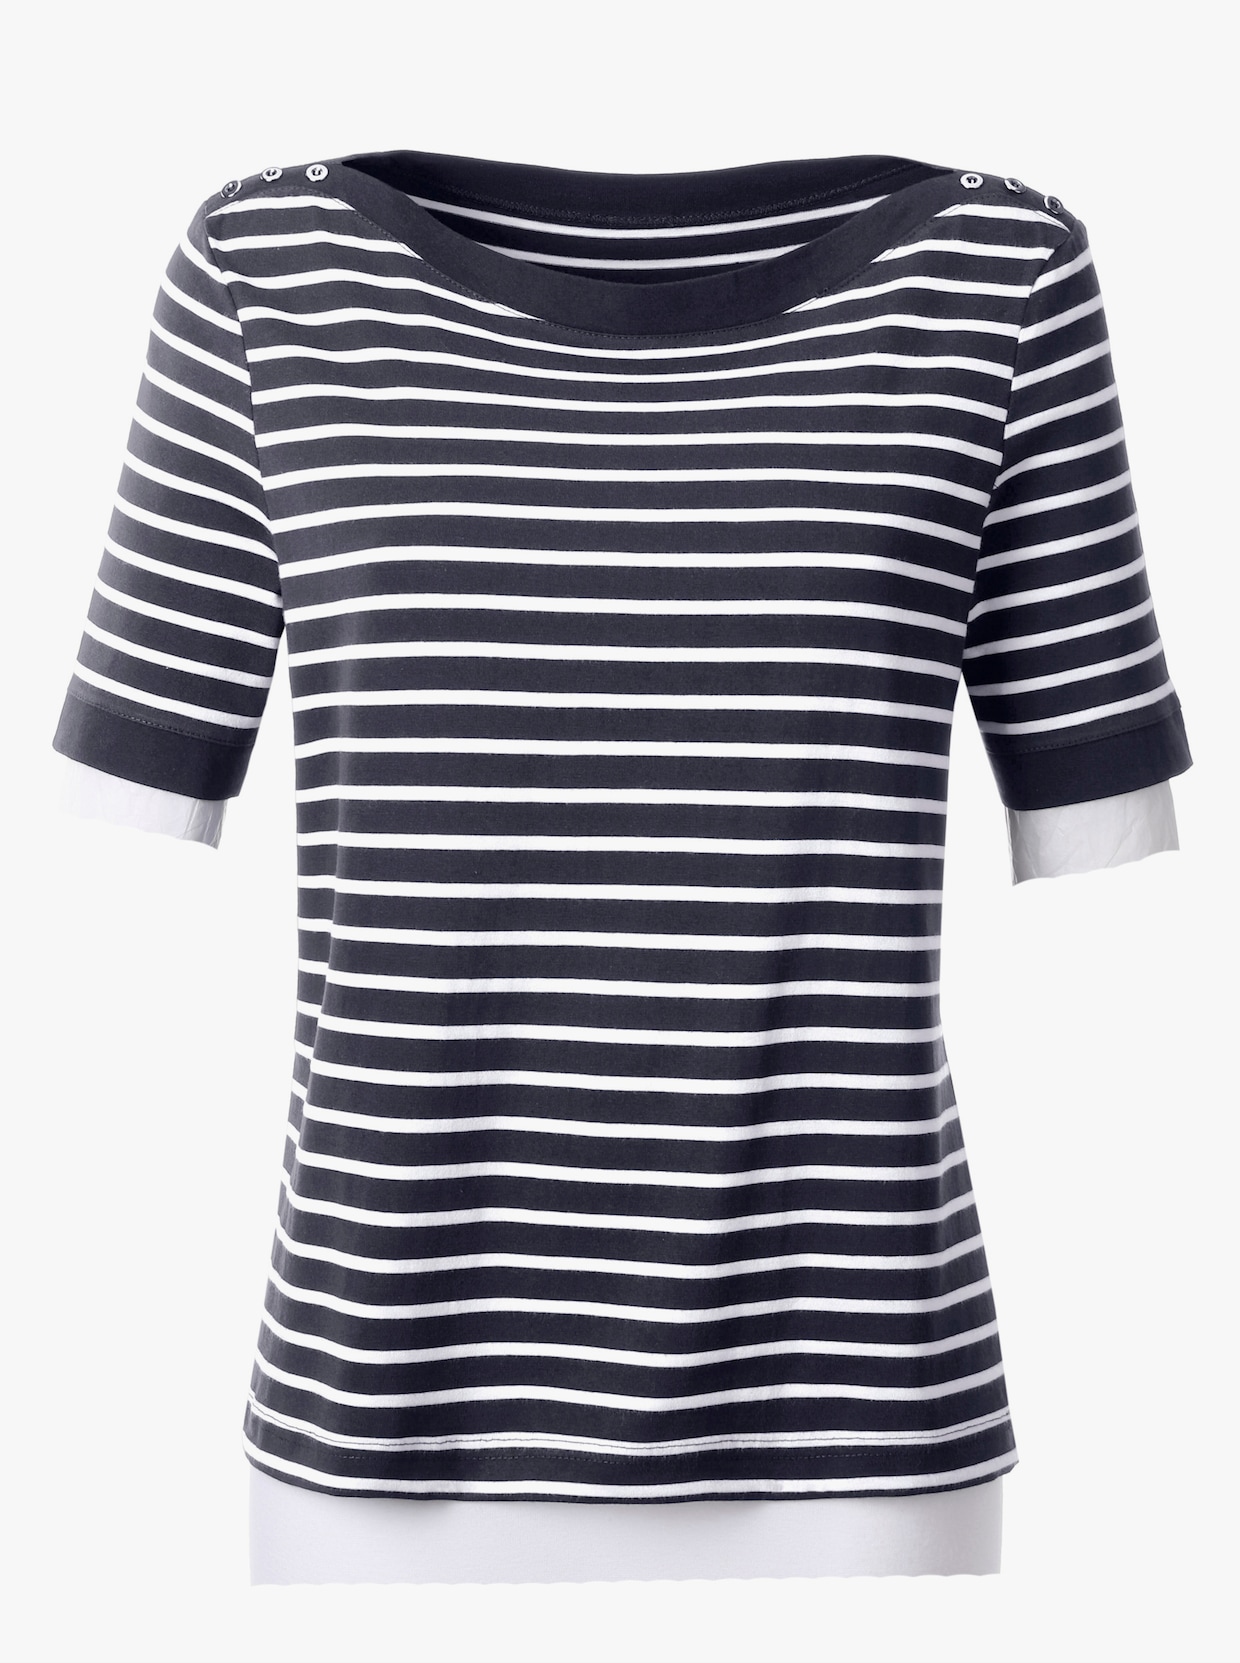 Tričko s krátkým rukávem - námořnická modrá-bílá